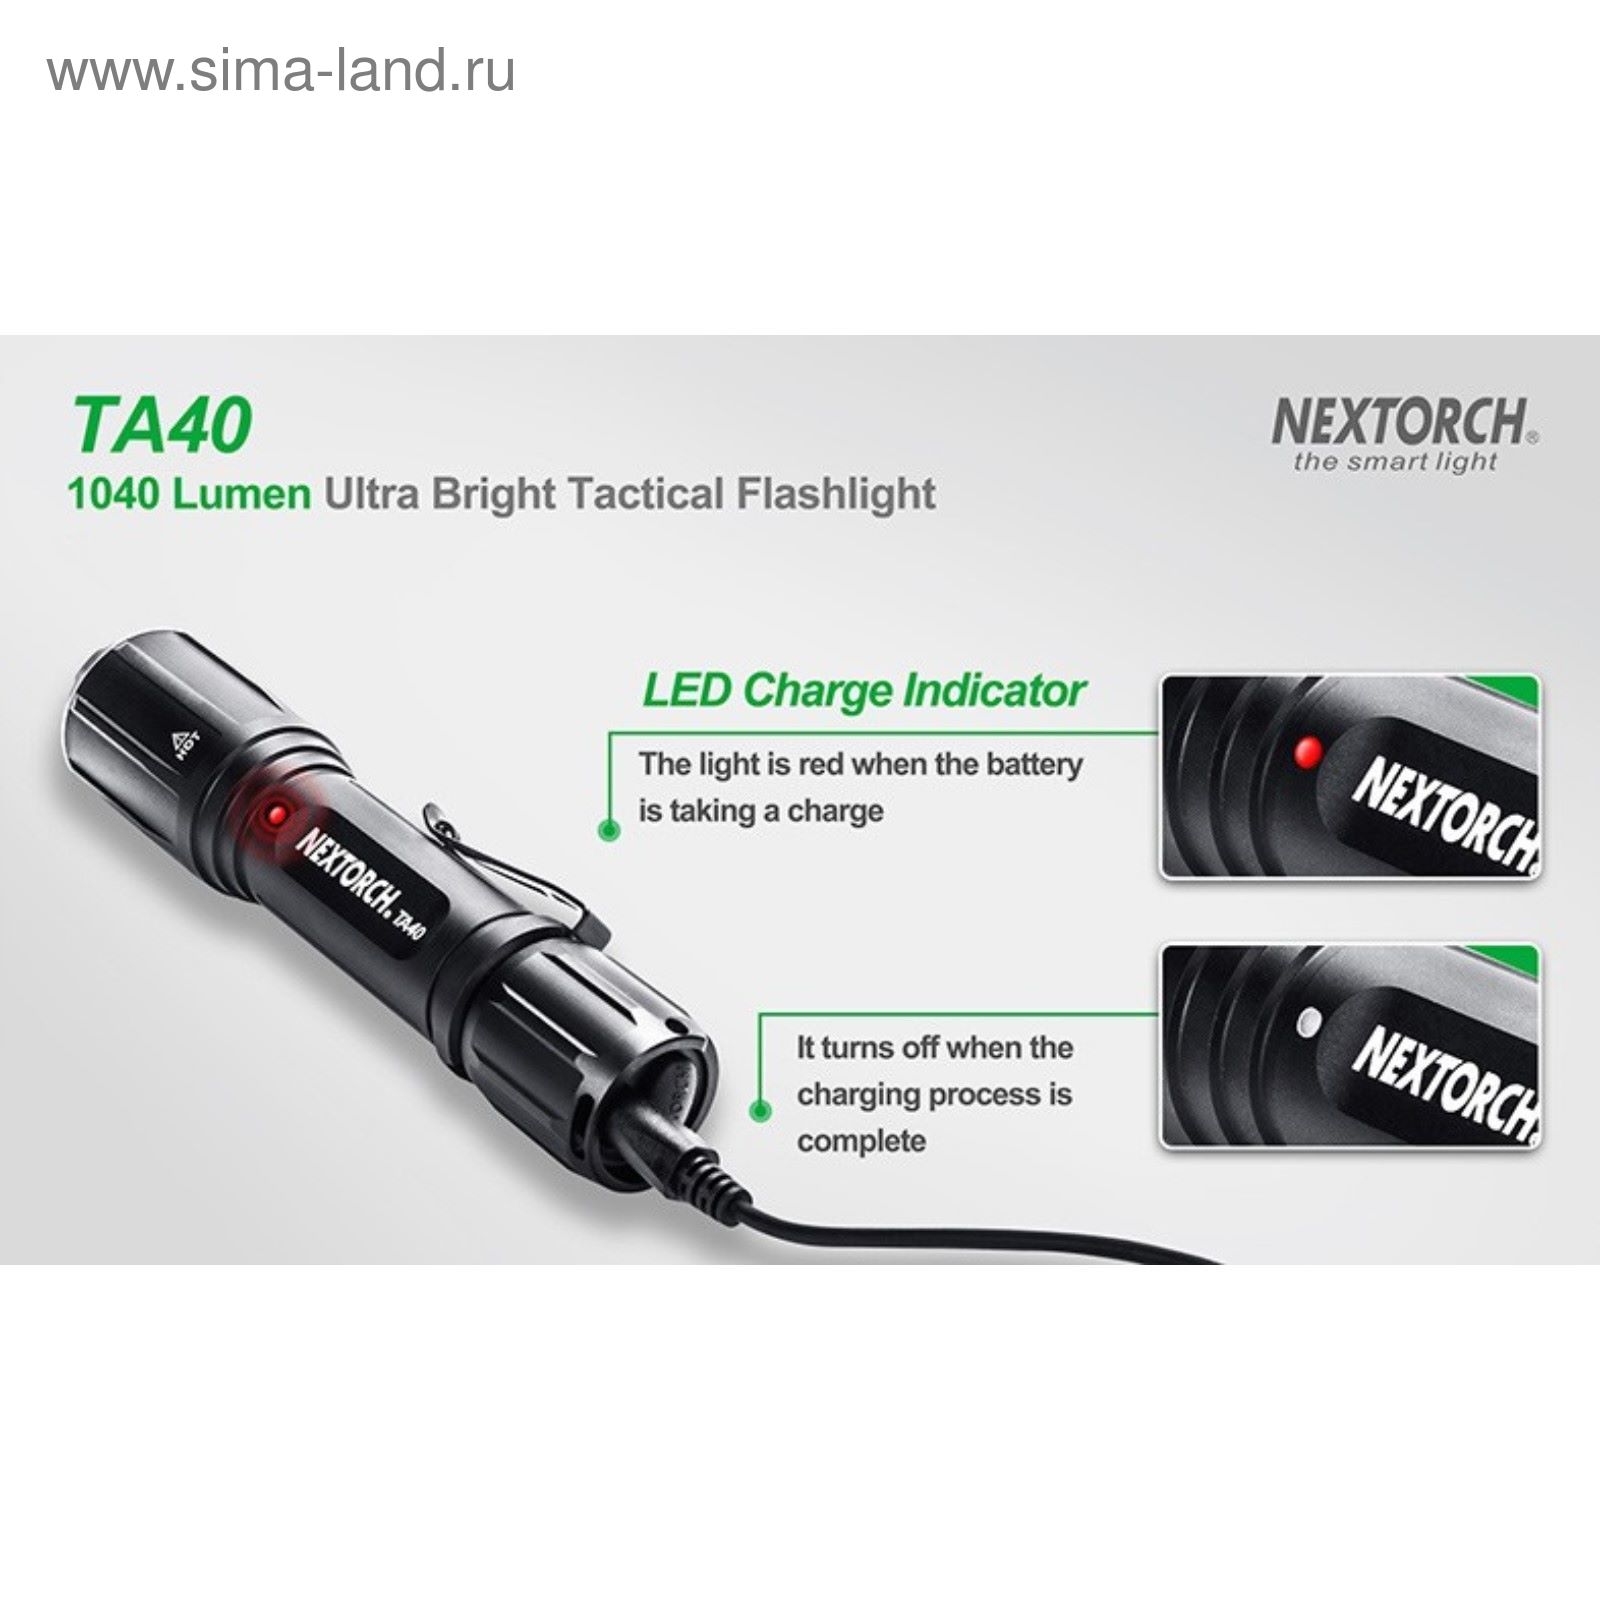 Подствольный фонарь TA40 светодиодный CREE, 1040 люм., 7 режимов, клипса + CR123A